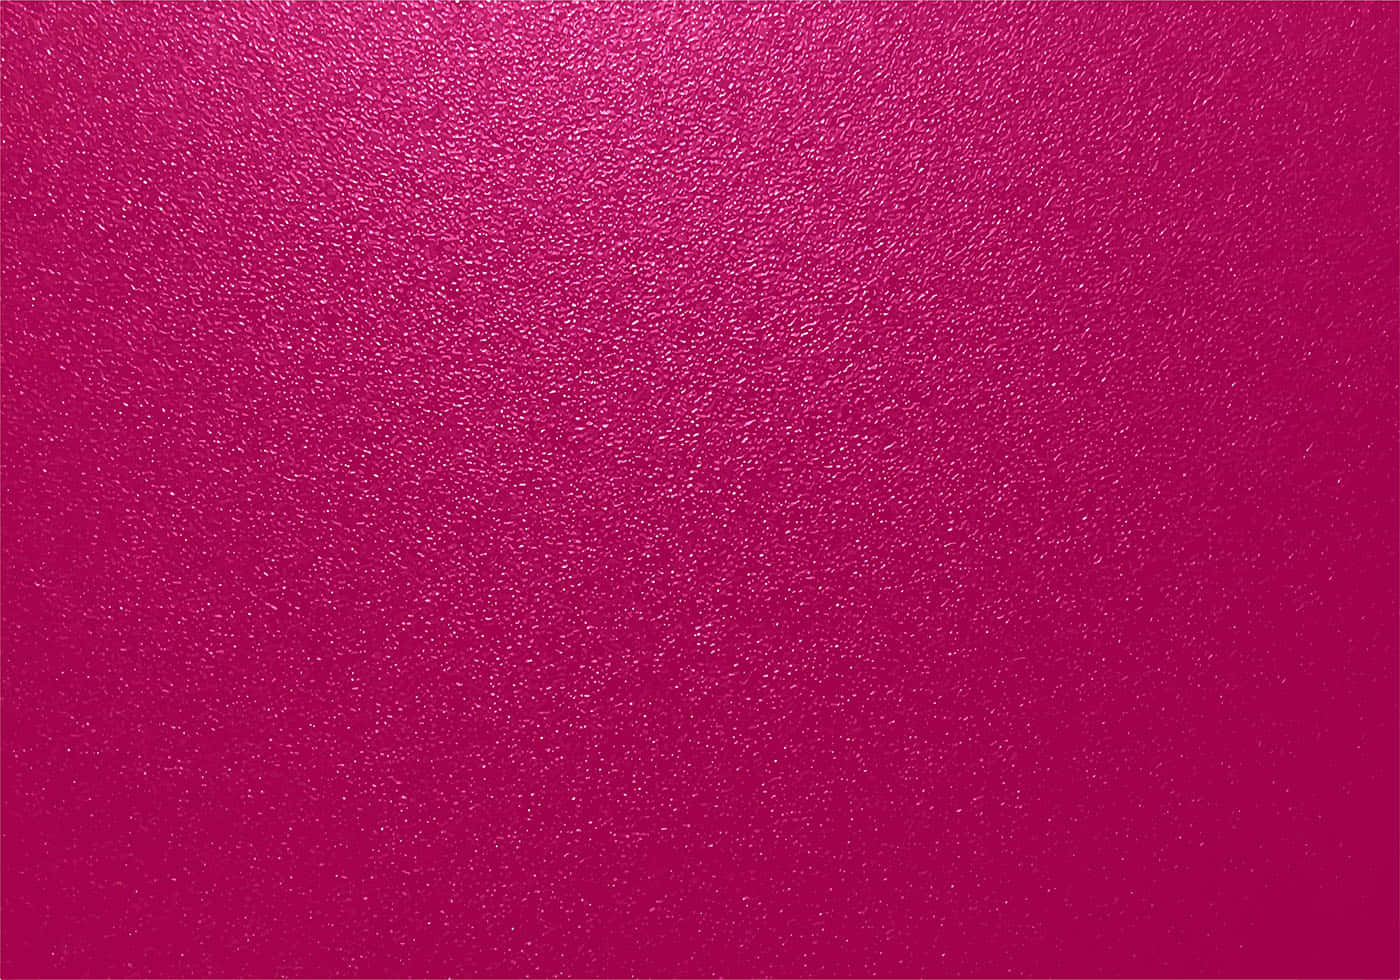 Fascinantepapel Tapiz De Textura Rosa Fondo de pantalla